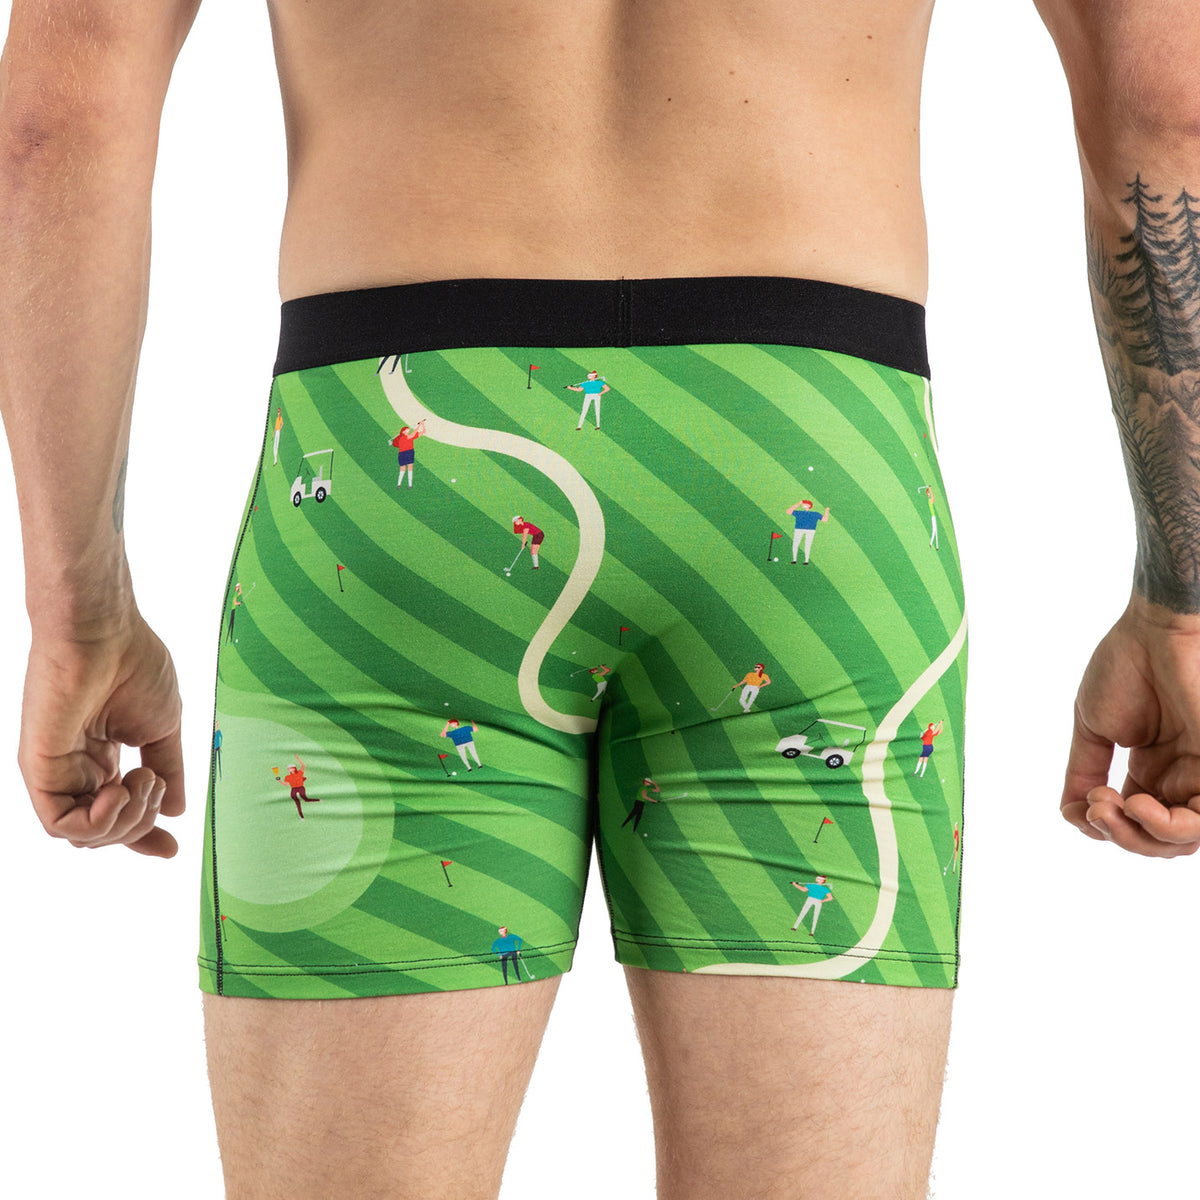 Mens Trunks, Golf Underwear